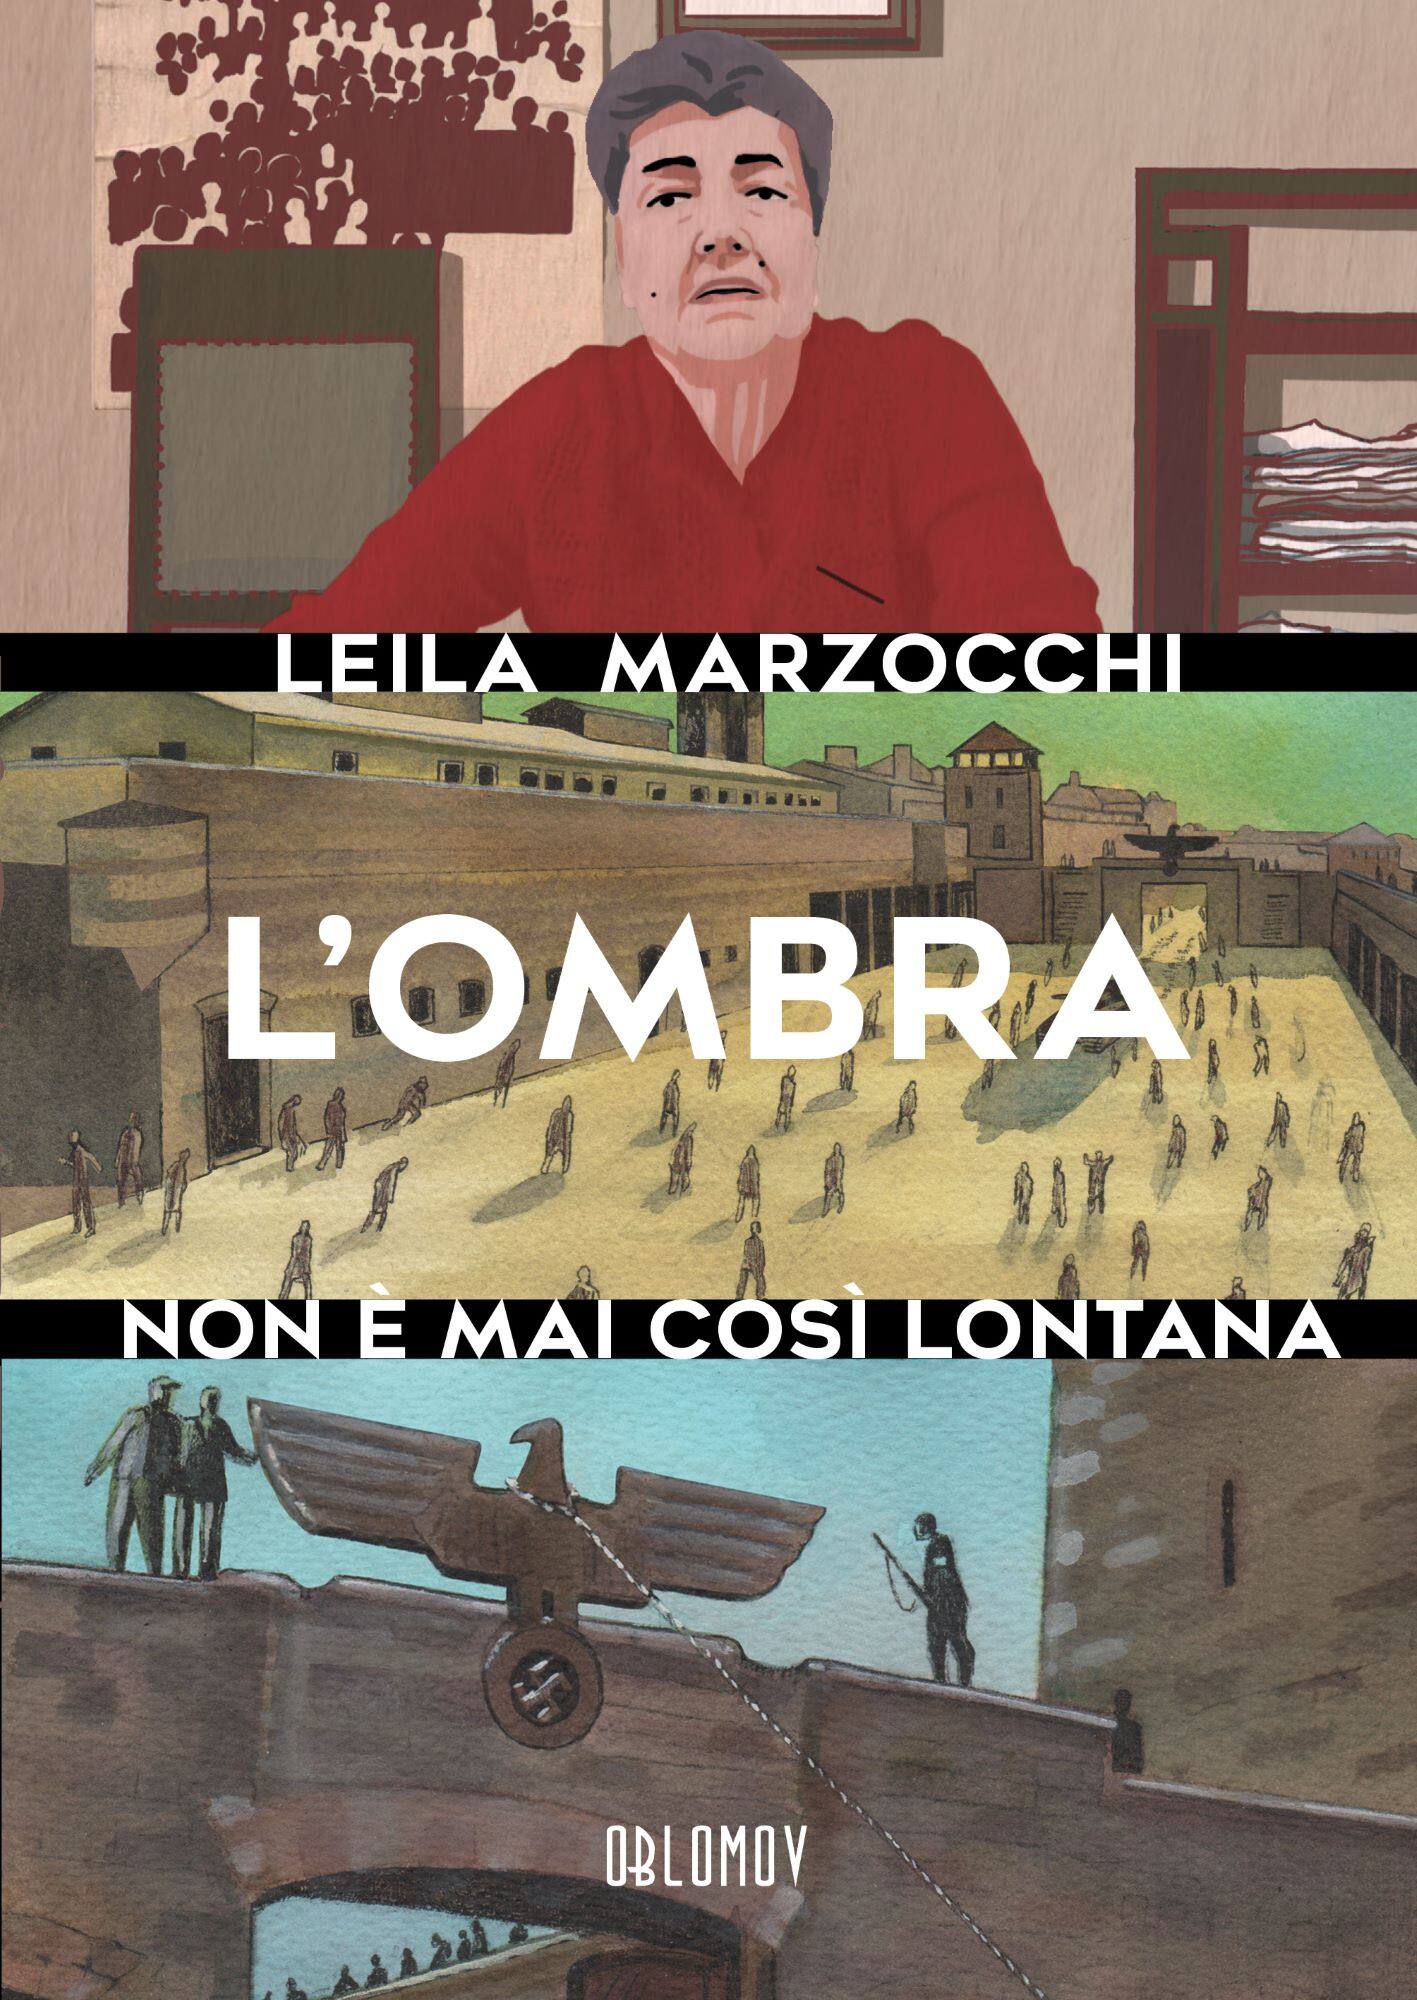 Leila Marzocchi, L'ombra non è mai così lontana, Oblomov, 184 pagine a colori, 20 euro